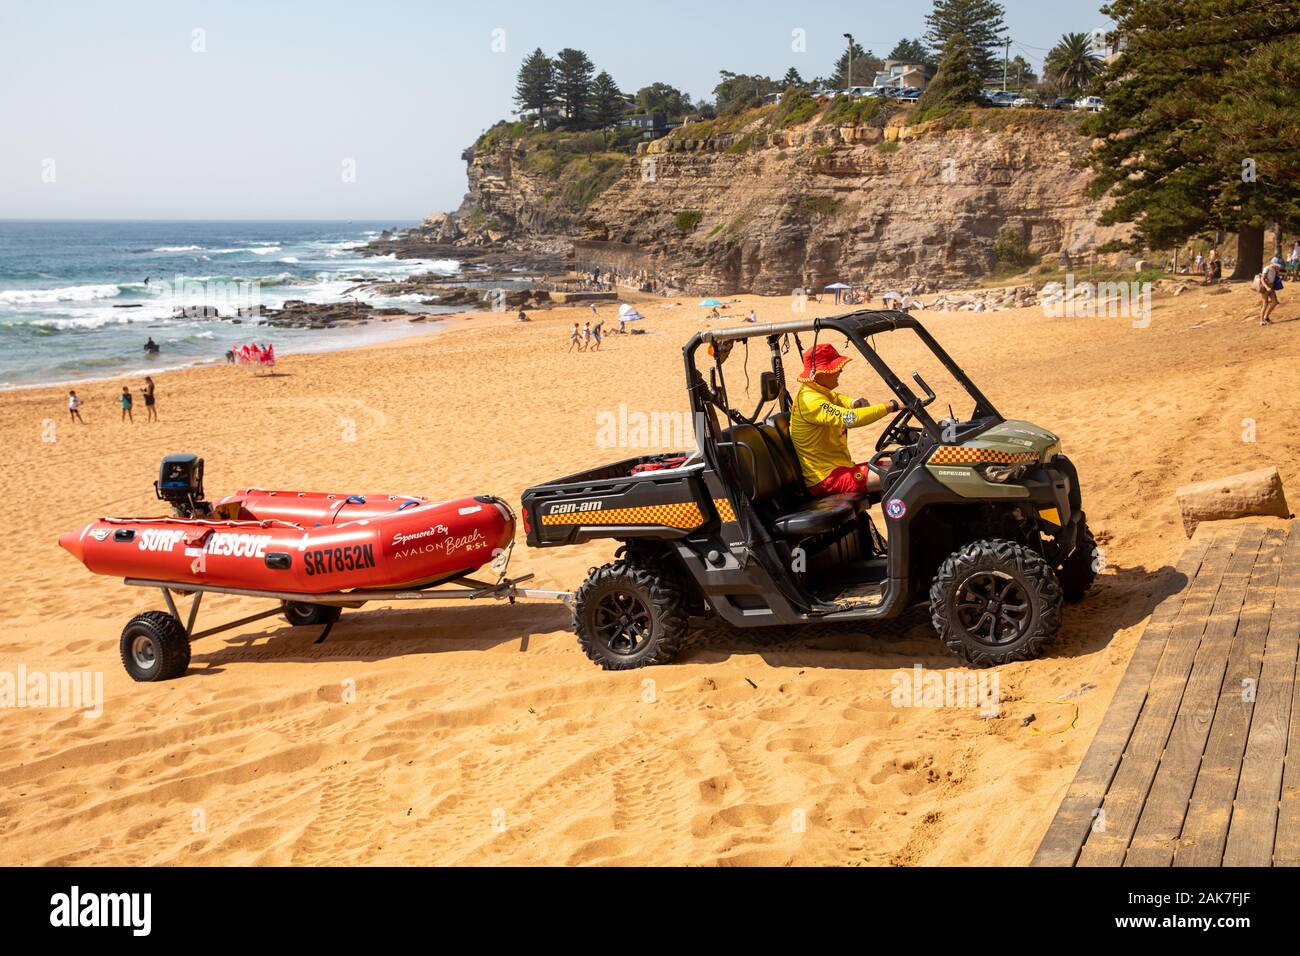 Lifesaver bénévoles sur la plage d'Avalon conduite Sydney buggy de sauvetage canot zodiac rouge lifesavers tirant Banque D'Images